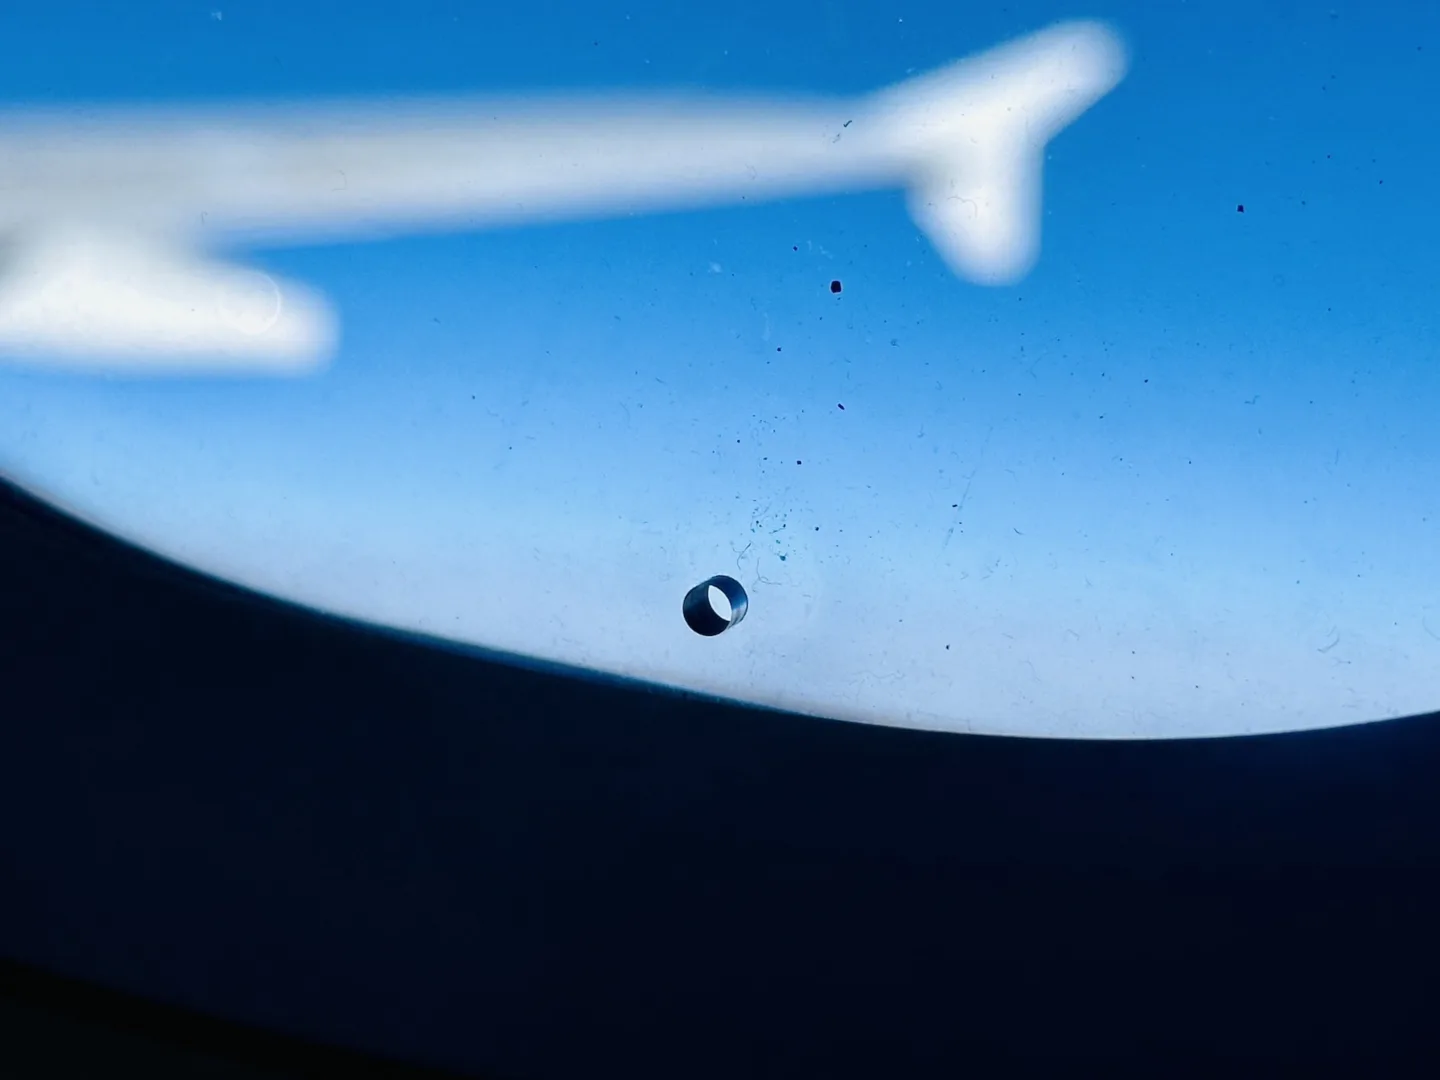 Po co jest dziura w oknie samolotu? Fot. materiał własny.